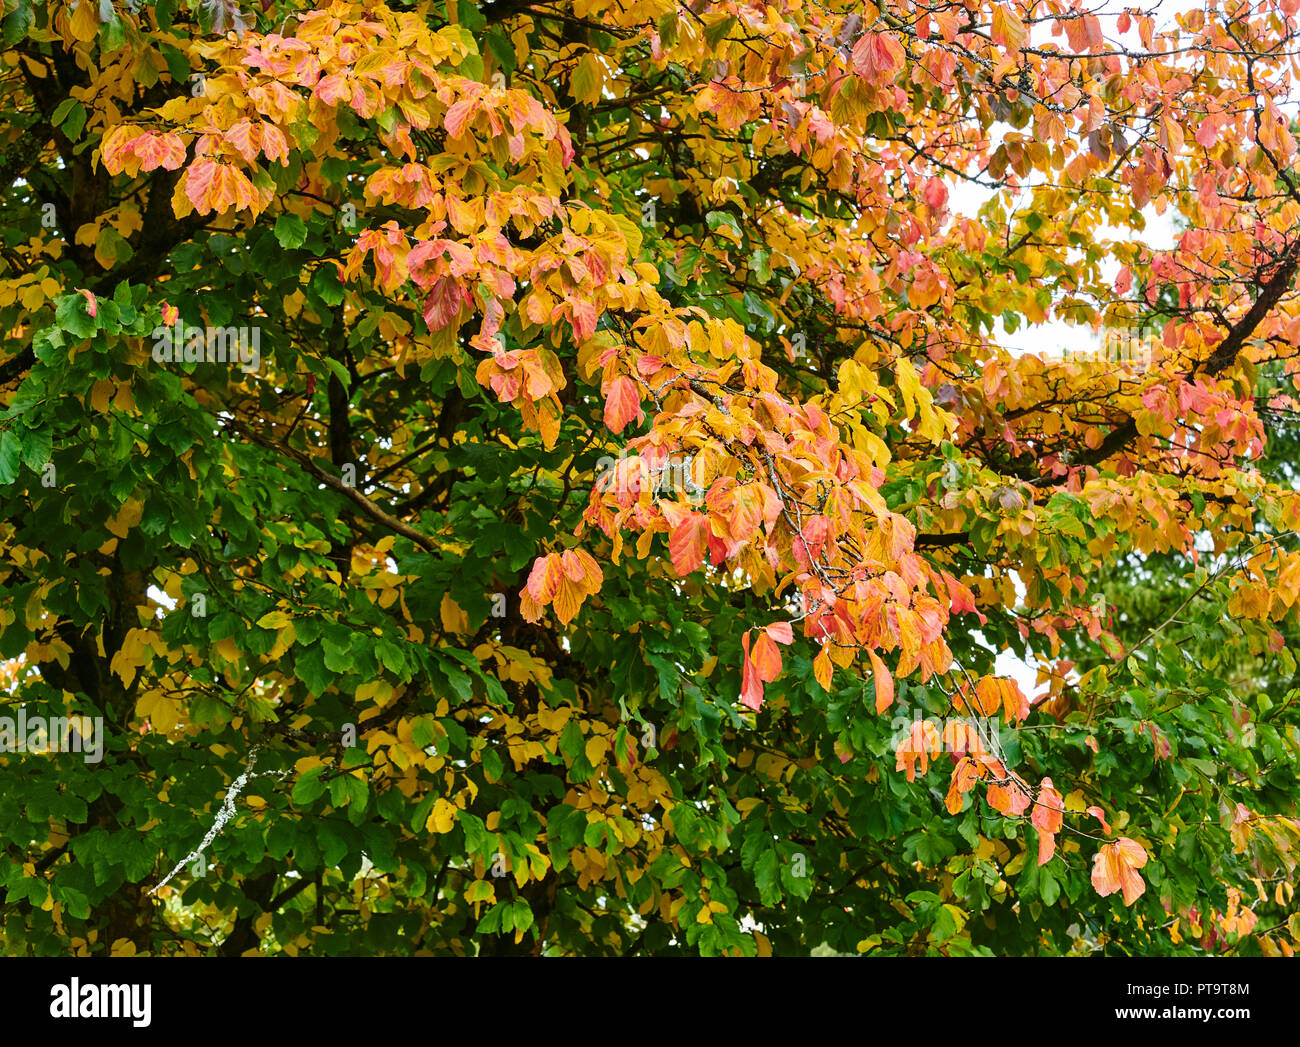 Pencoed, Gales, Reino Unido. 8 de octubre de 2018, el clima del REINO UNIDO: Signos de otoño tomando como hojas de palo fierro persa(Parrottia persica) comienzan a girar el color. Crédito: Phillip Thomas/Alamy Live News Foto de stock